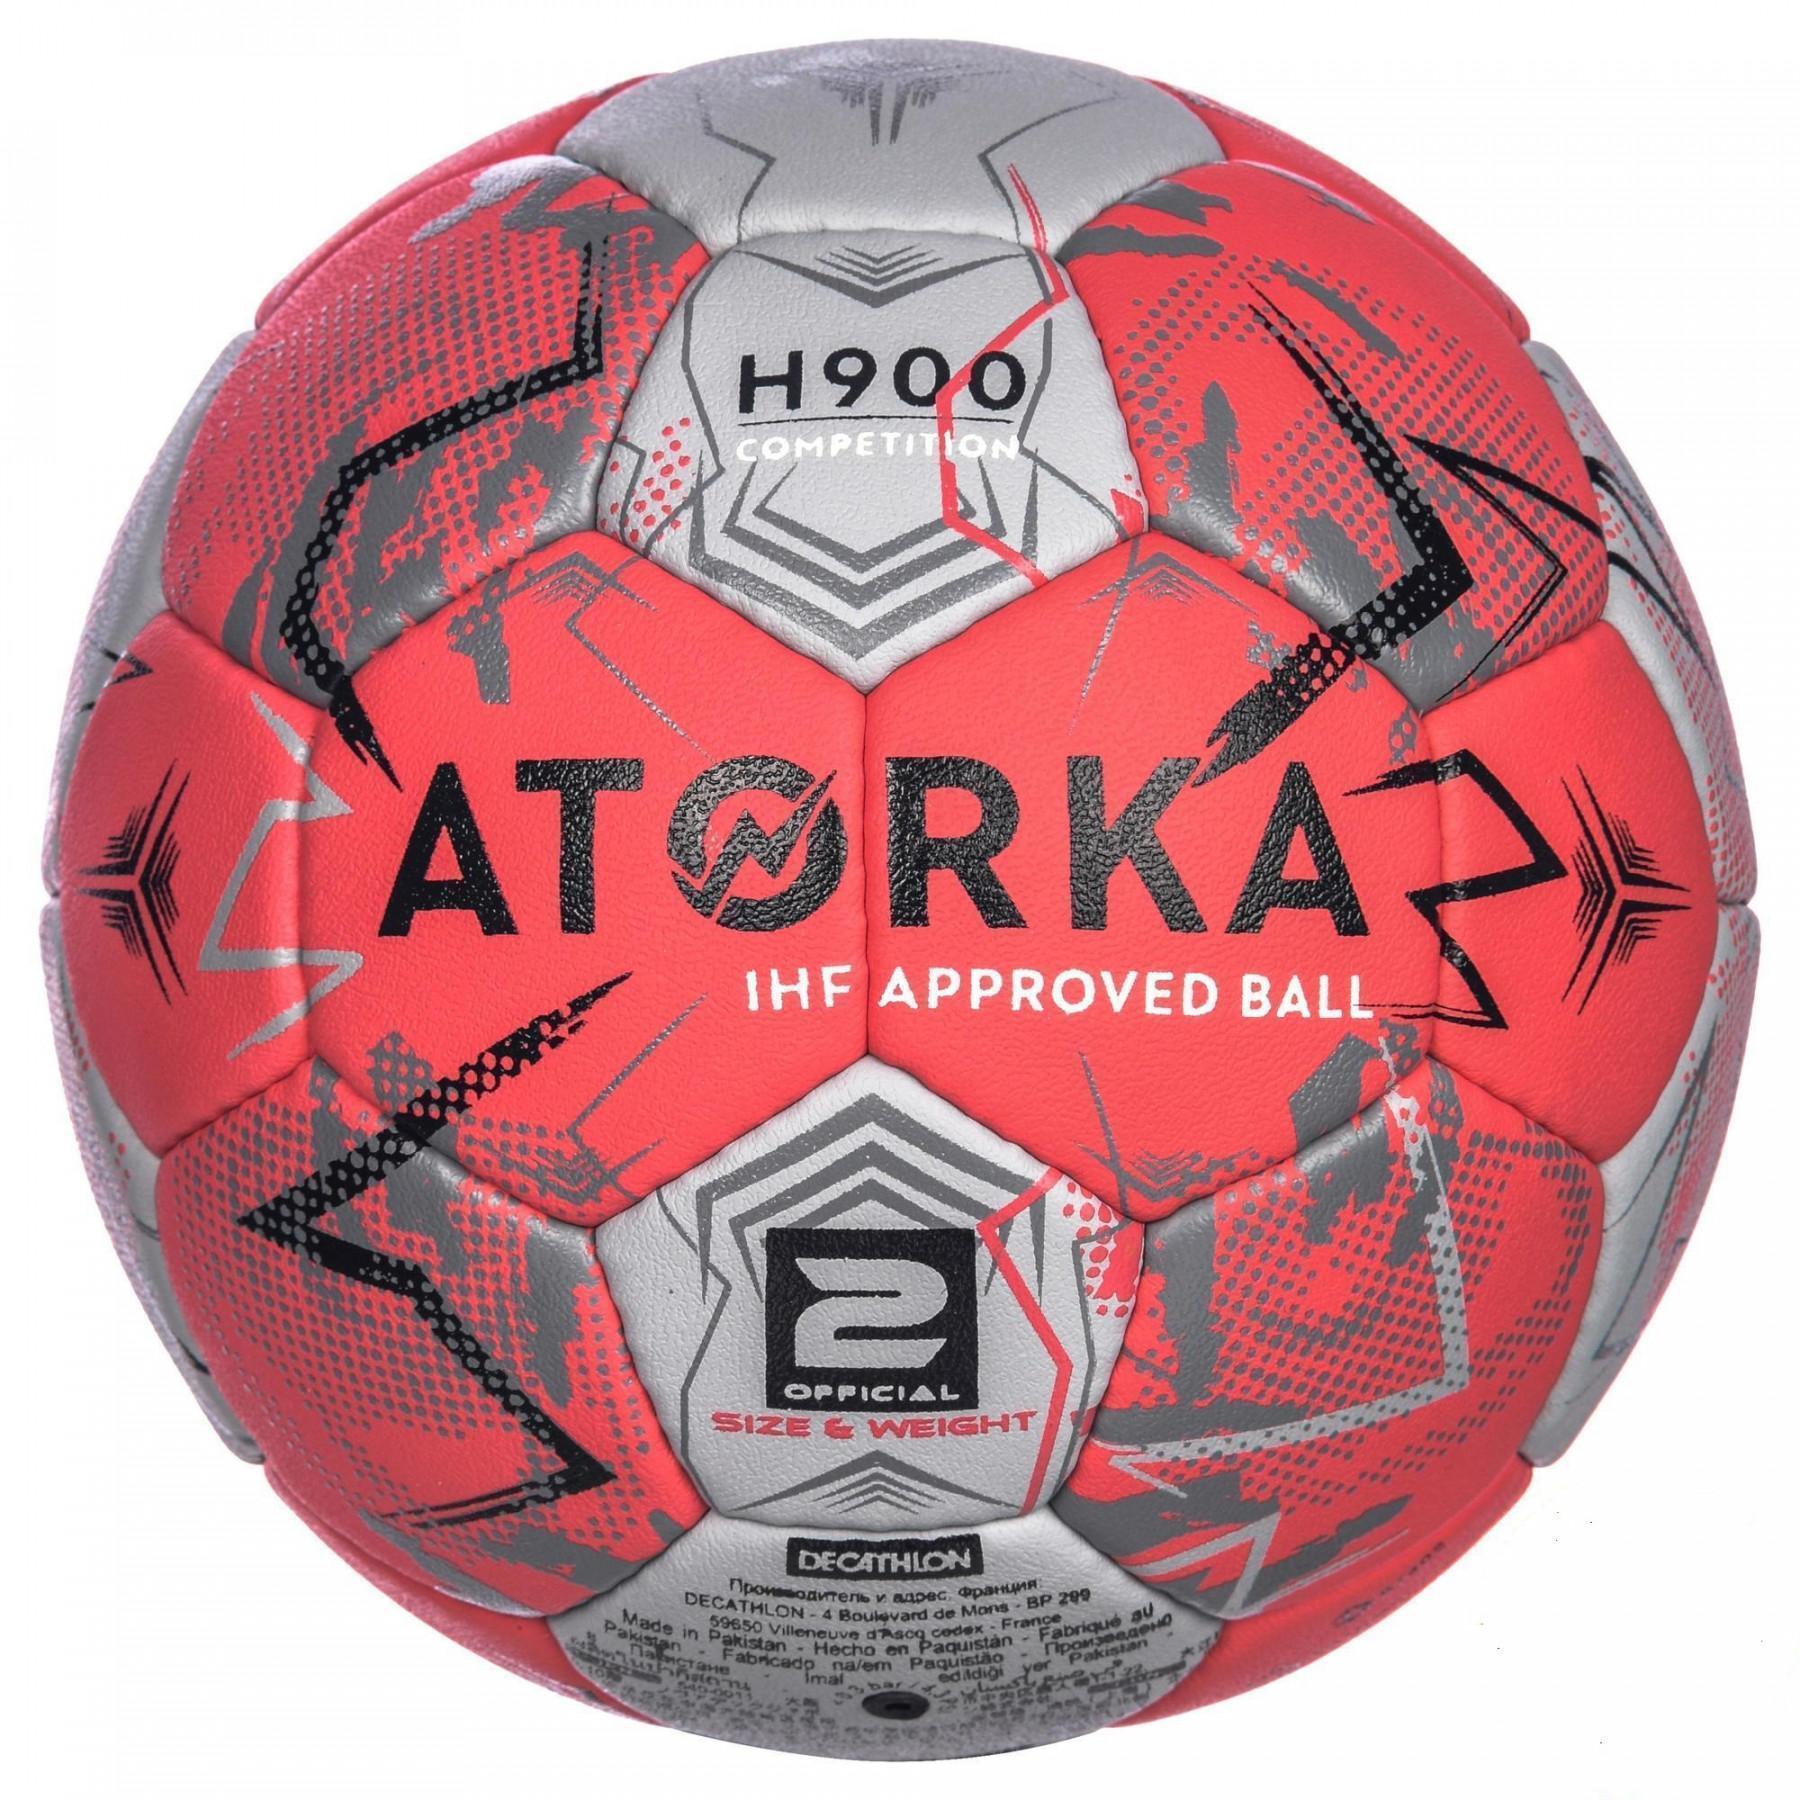 Balon Atorka H900 IHF - Taille 2